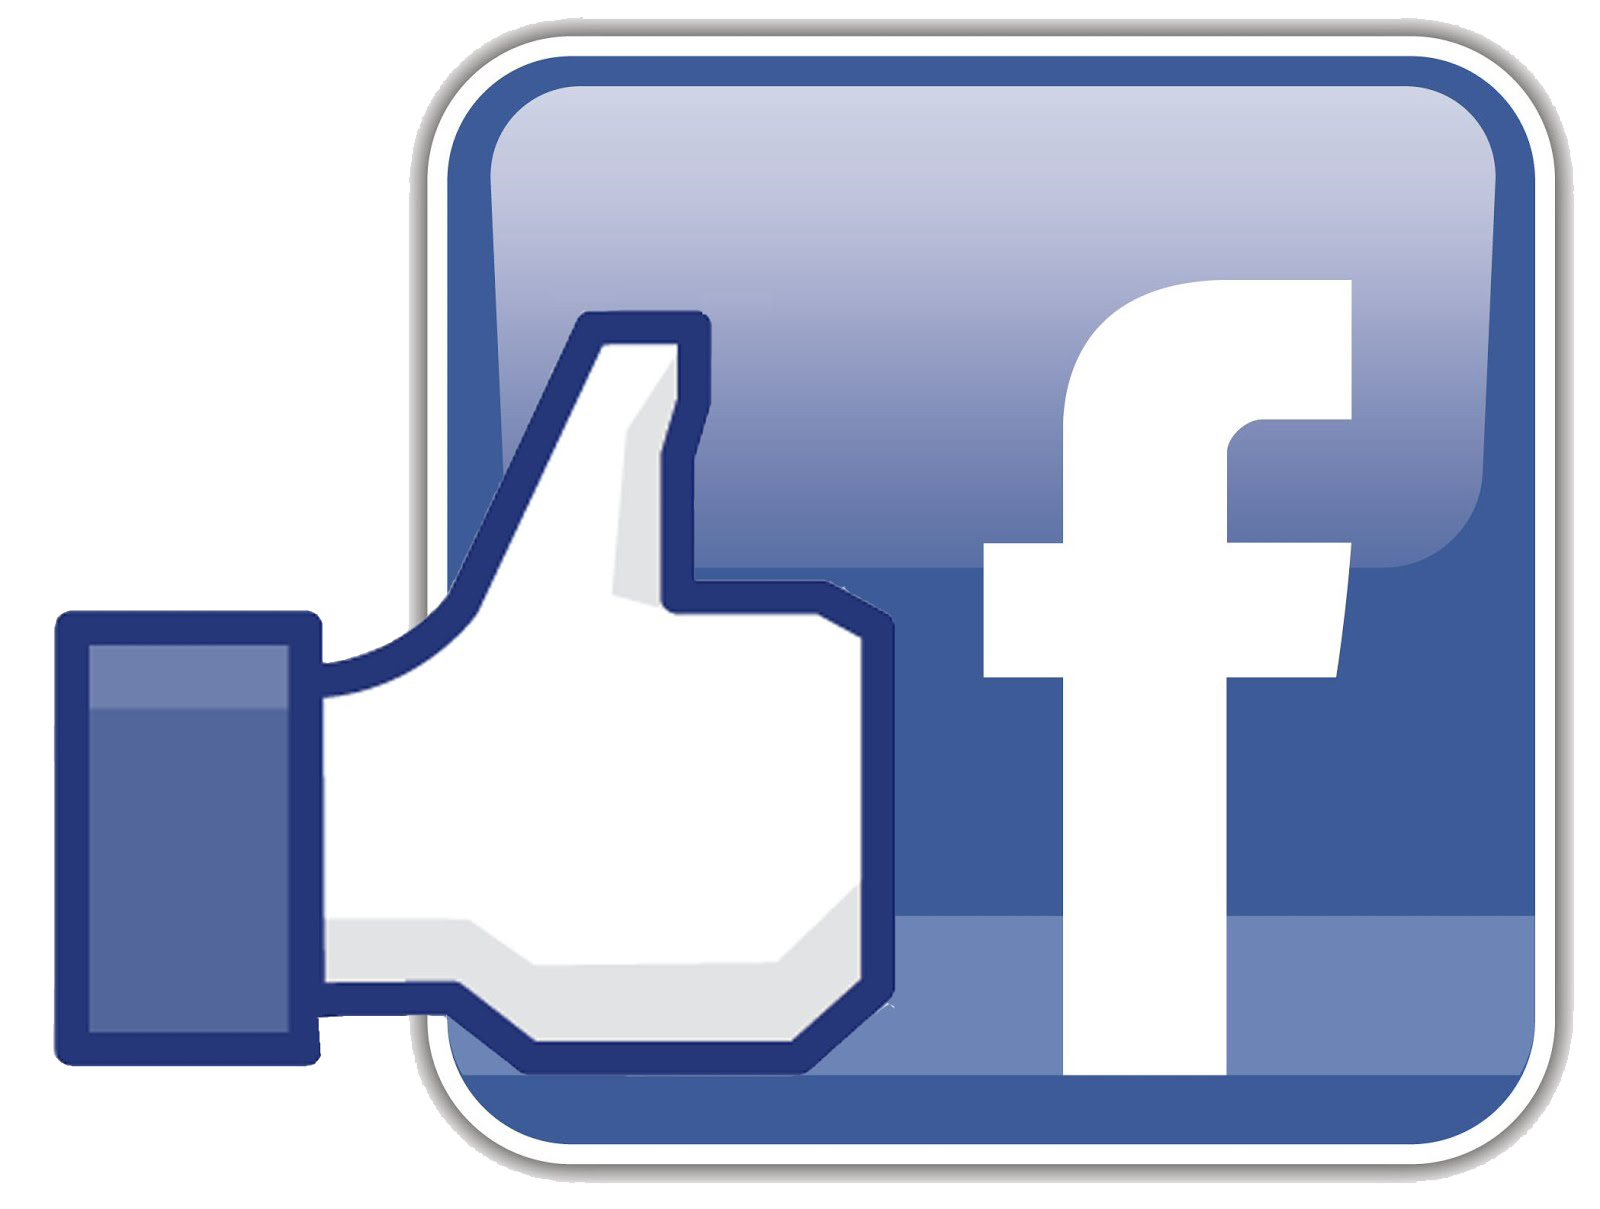 Facebook logo, free download